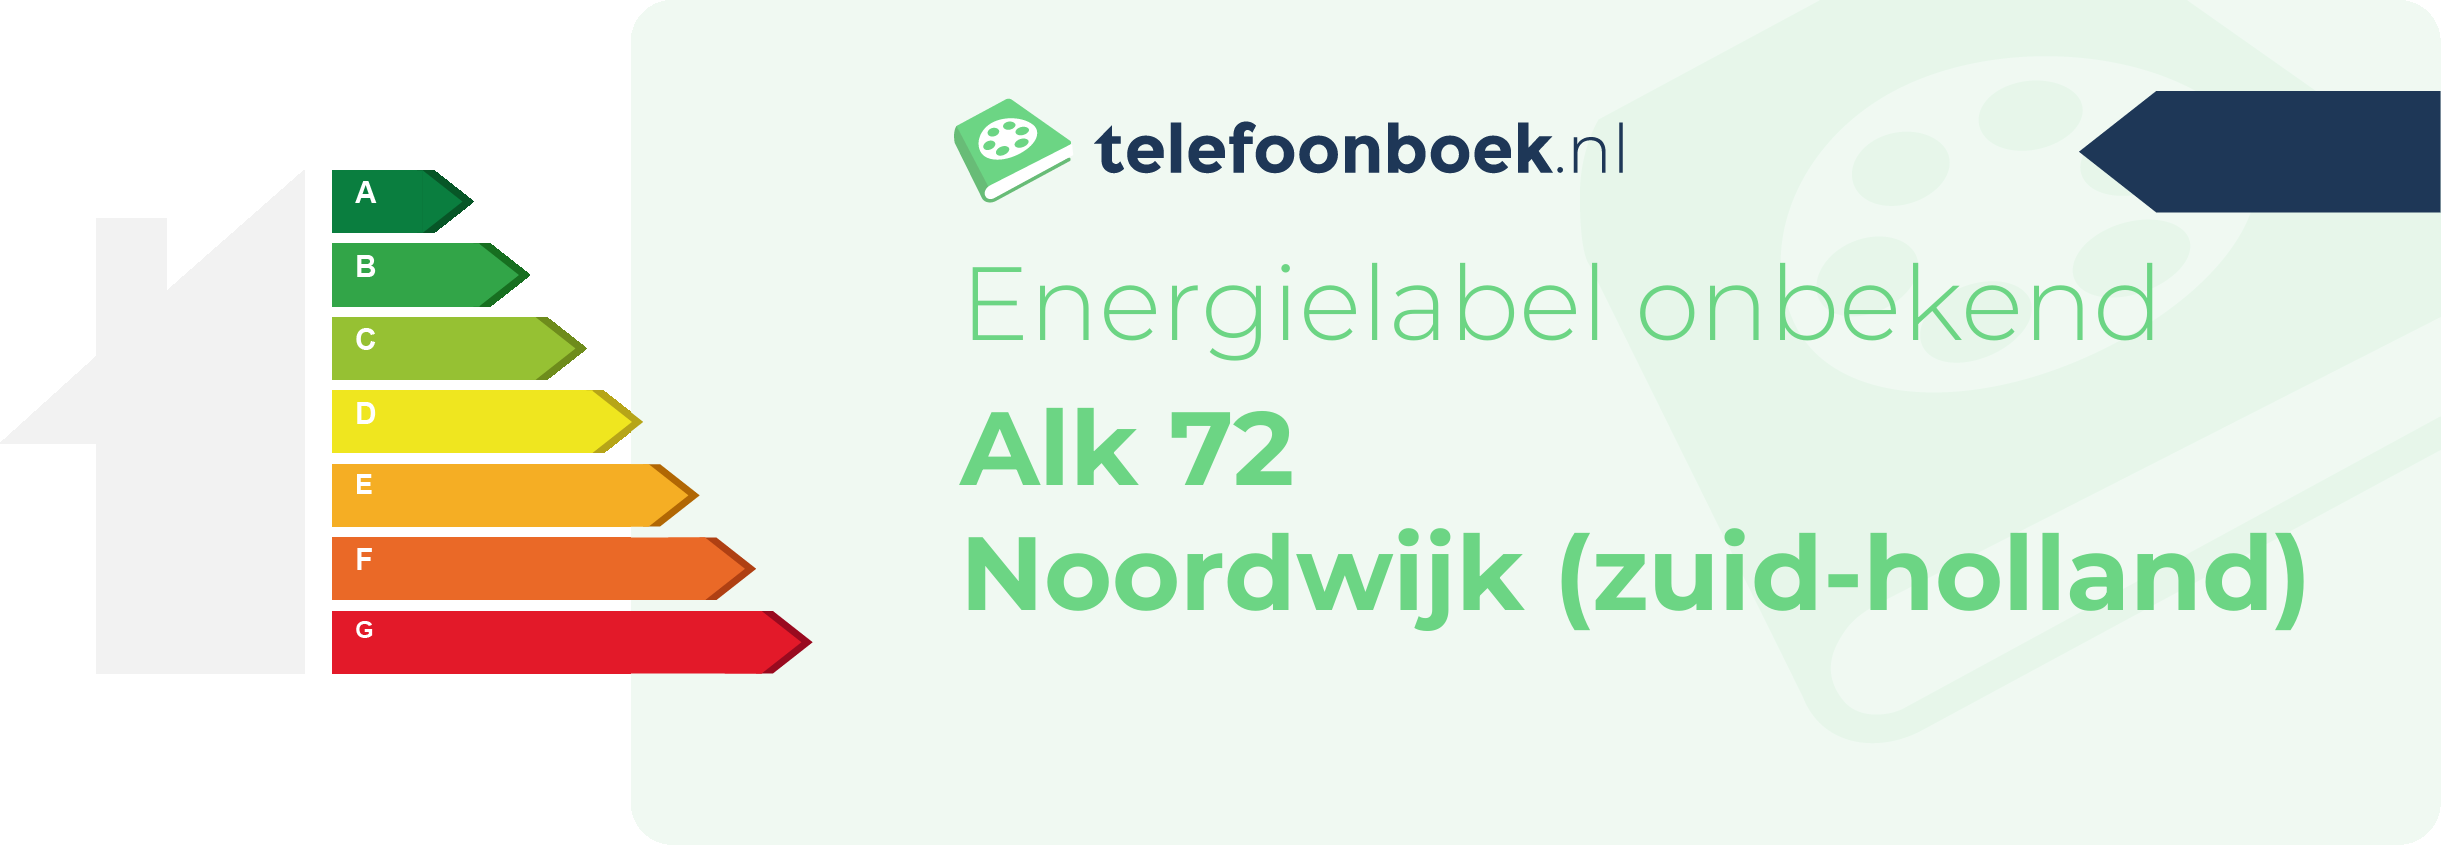 Energielabel Alk 72 Noordwijk (Zuid-Holland)